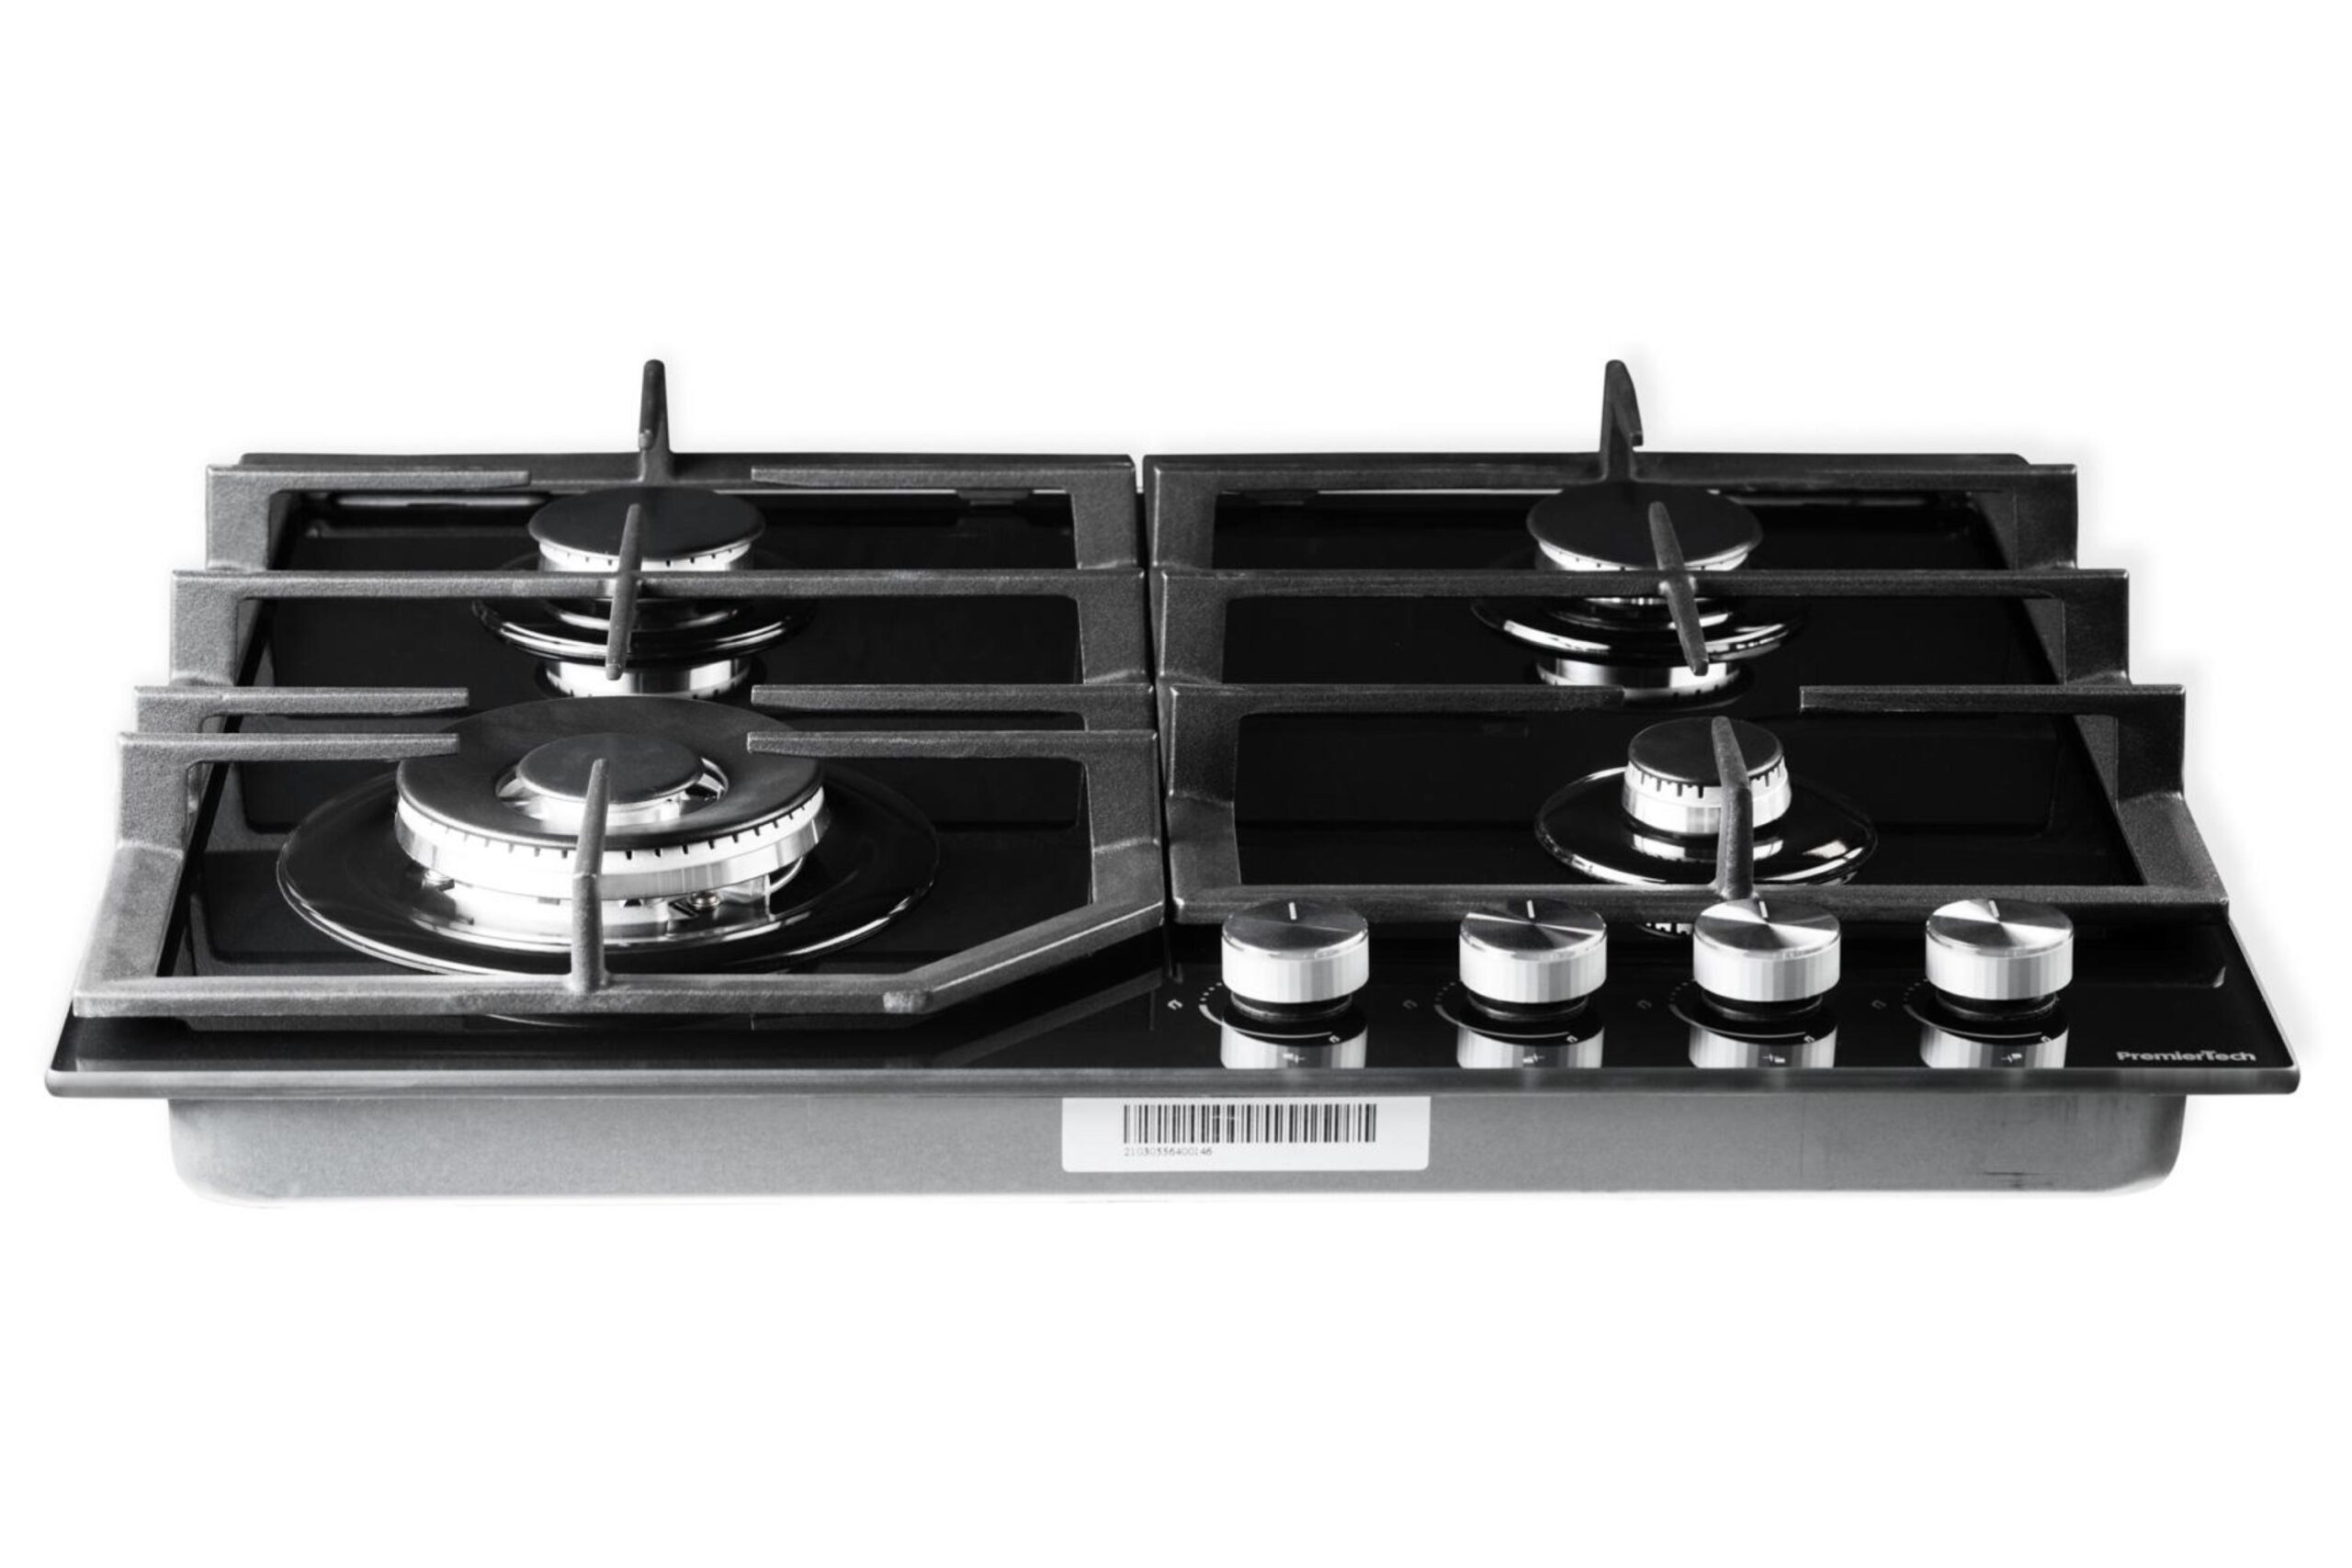 PremierTech® PremierTech Piano Cottura a Gas in Vetro Nero da 60cm 4 fuochi con Wok supporti in ghisa PC604FG